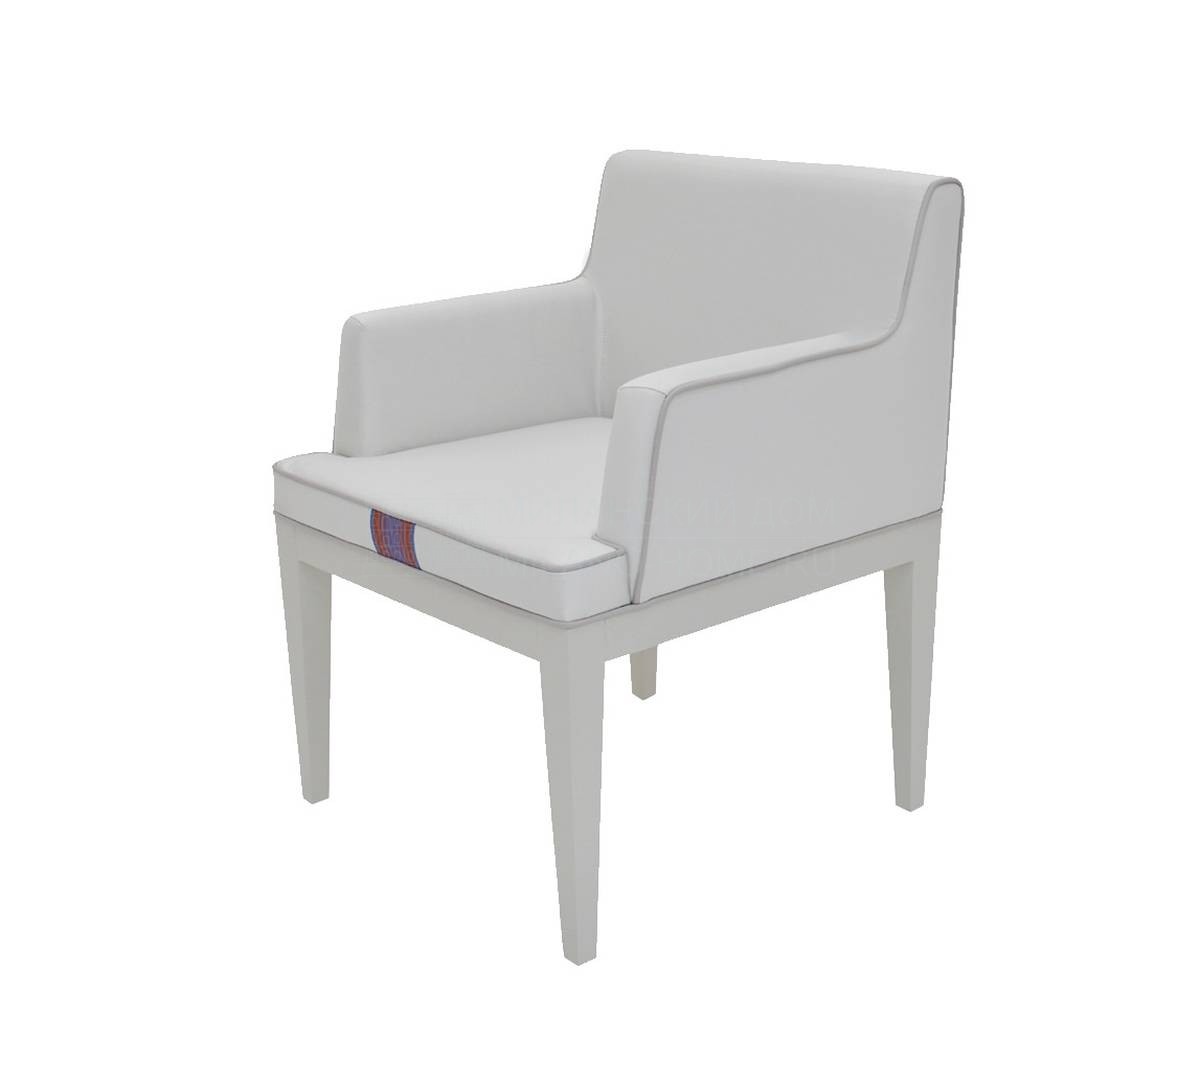 Кожаное кресло Abu Dhabi armchair из Португалии фабрики FRATO